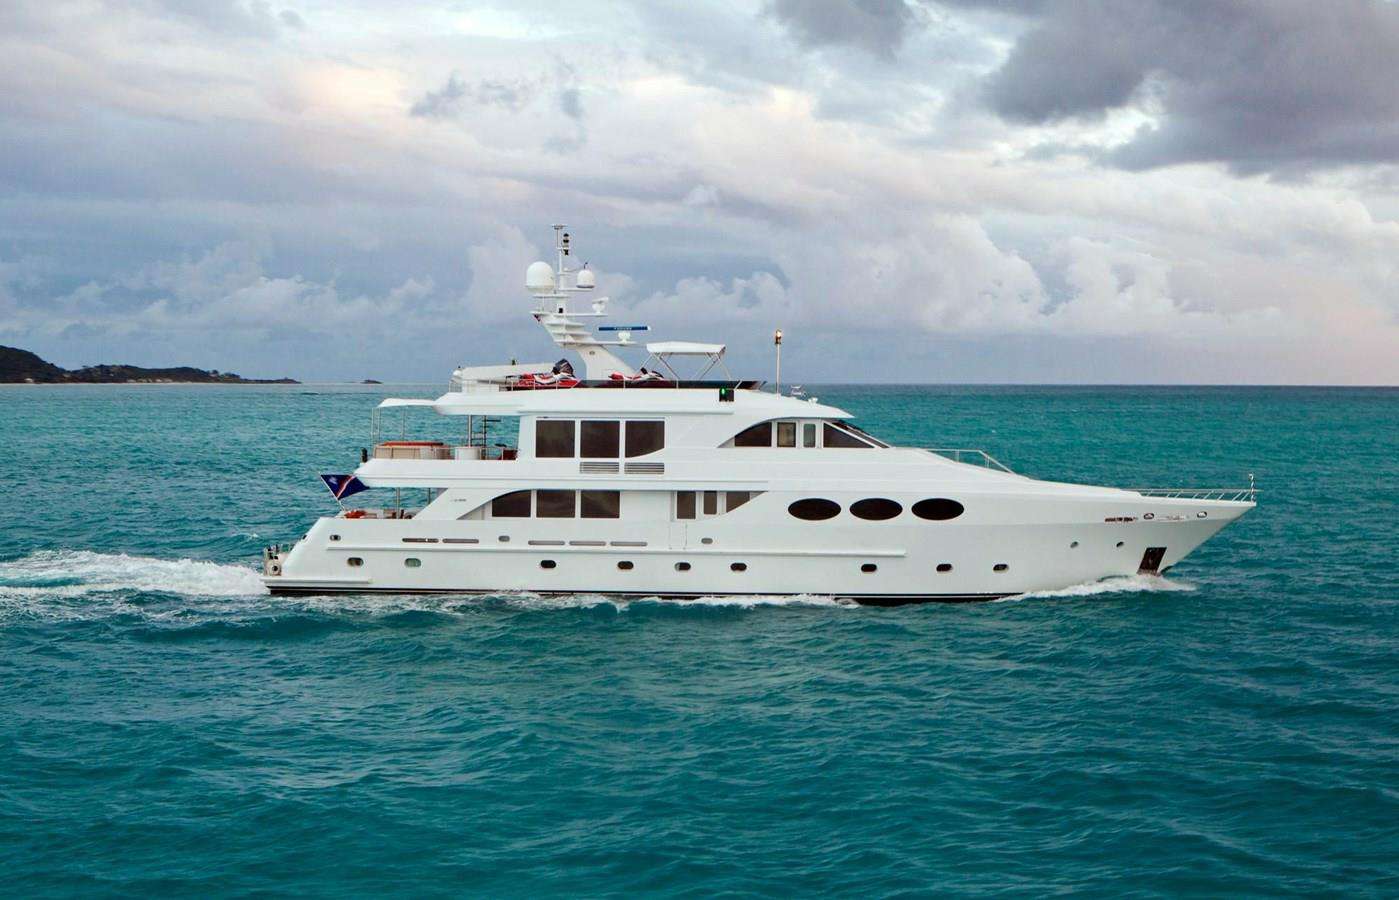 LAST CALL - Motor Boat Charter Canada & Boat hire in Alaska, Bahamas, Mexico 1